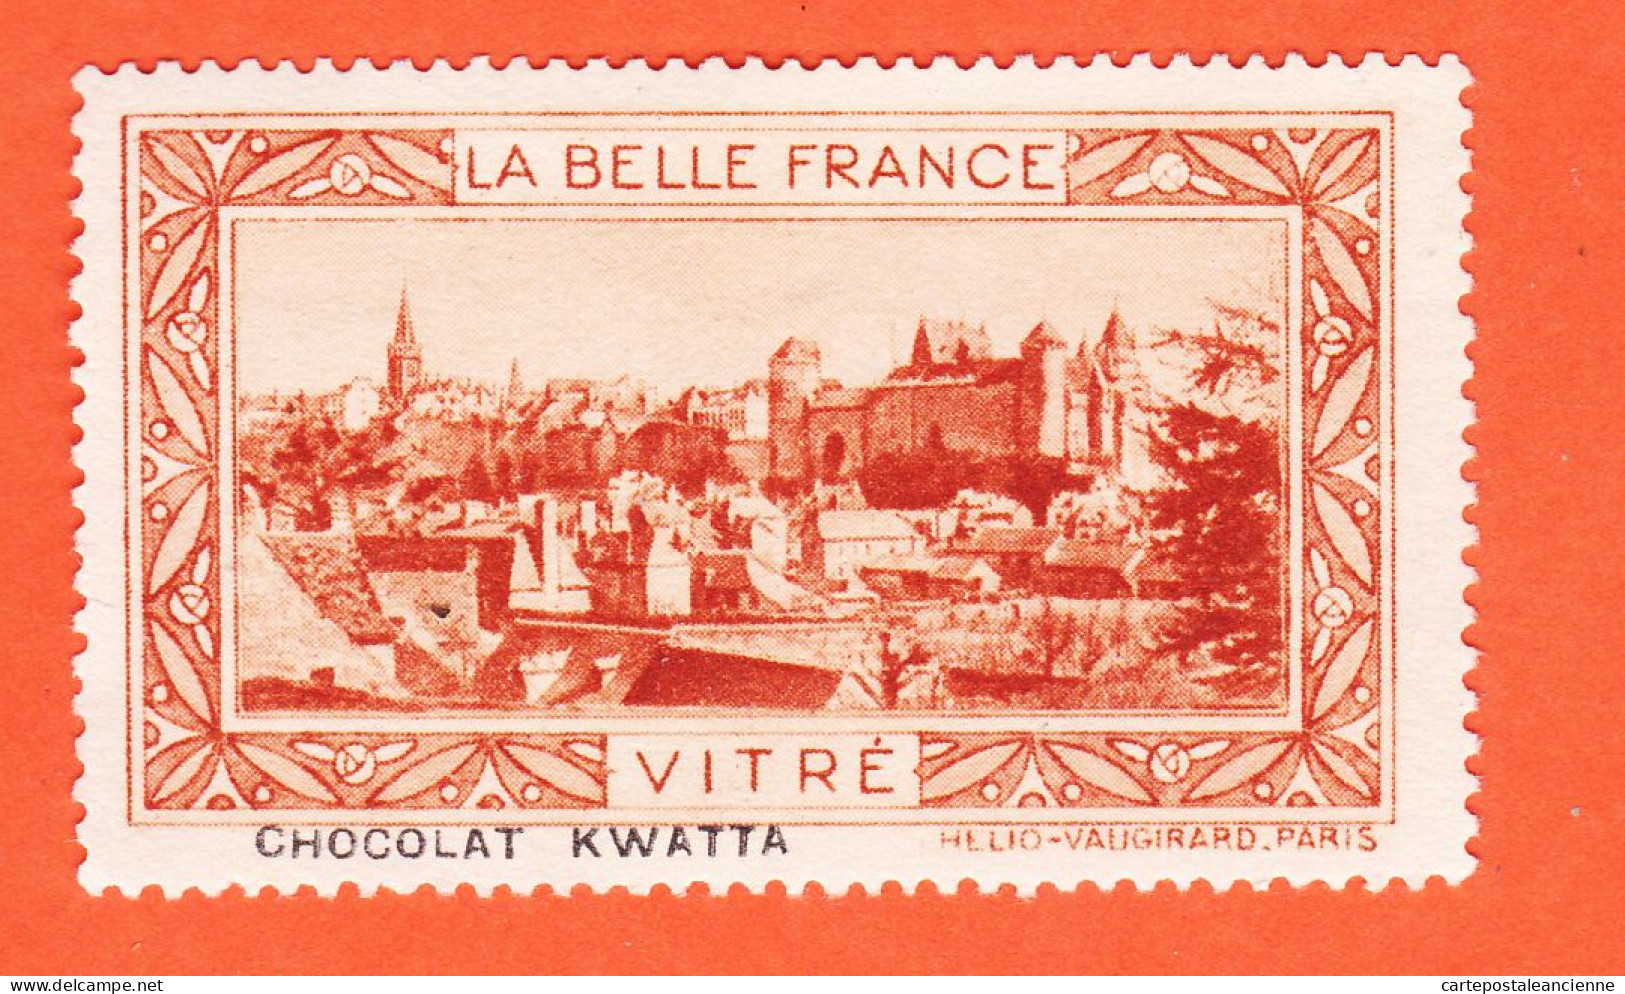 13000 / ⭐ ◉ VITRE (Orange) 35-Ille Vilaine Chateau Chocolat Pub KWATTA Vignette Collection BELLE FRANCE HELIO-VAUGIRARD - Toerisme (Vignetten)